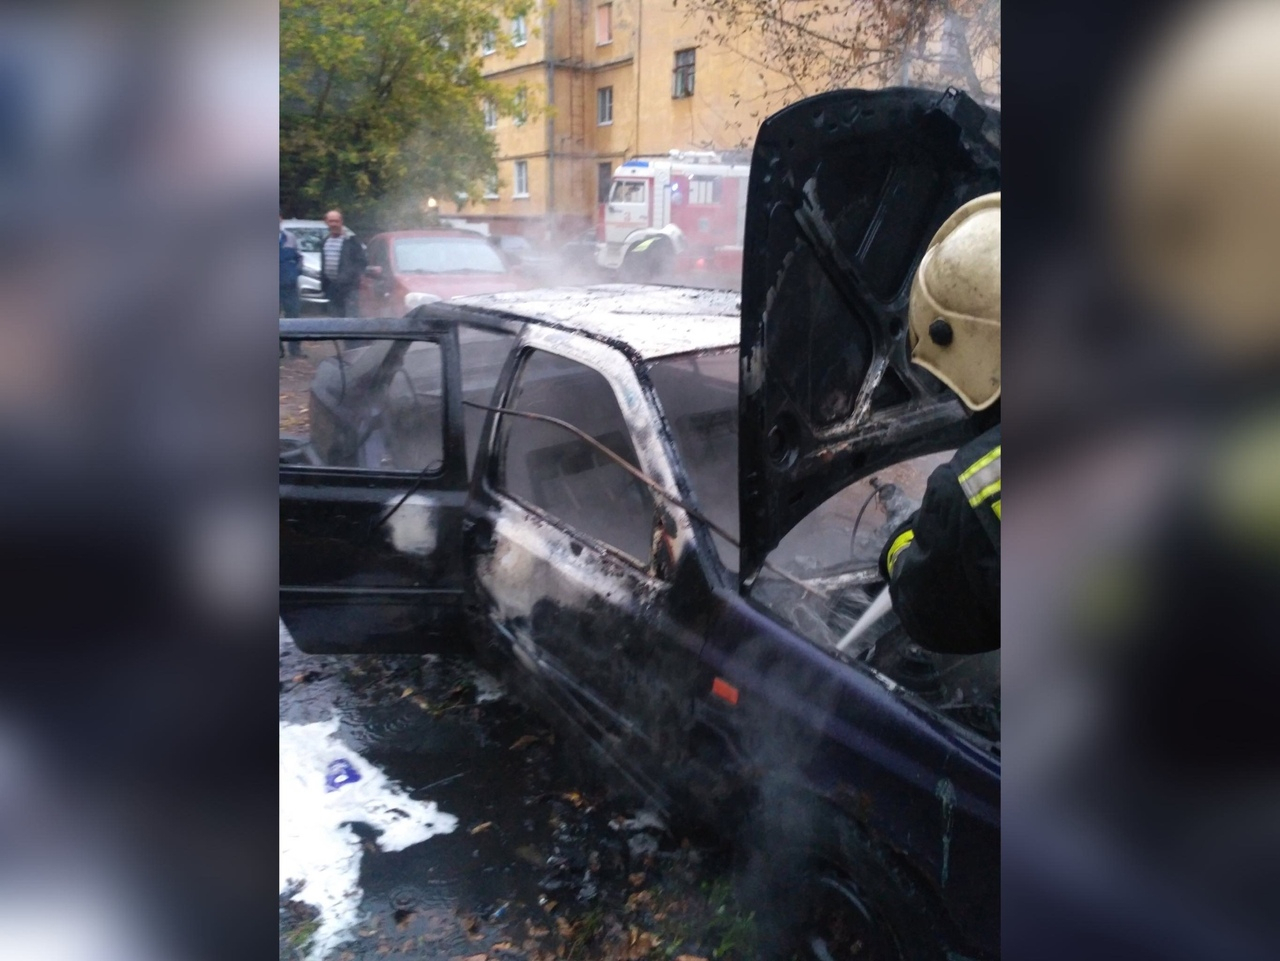 "Третья за сутки": в Ярославле массово горят машины